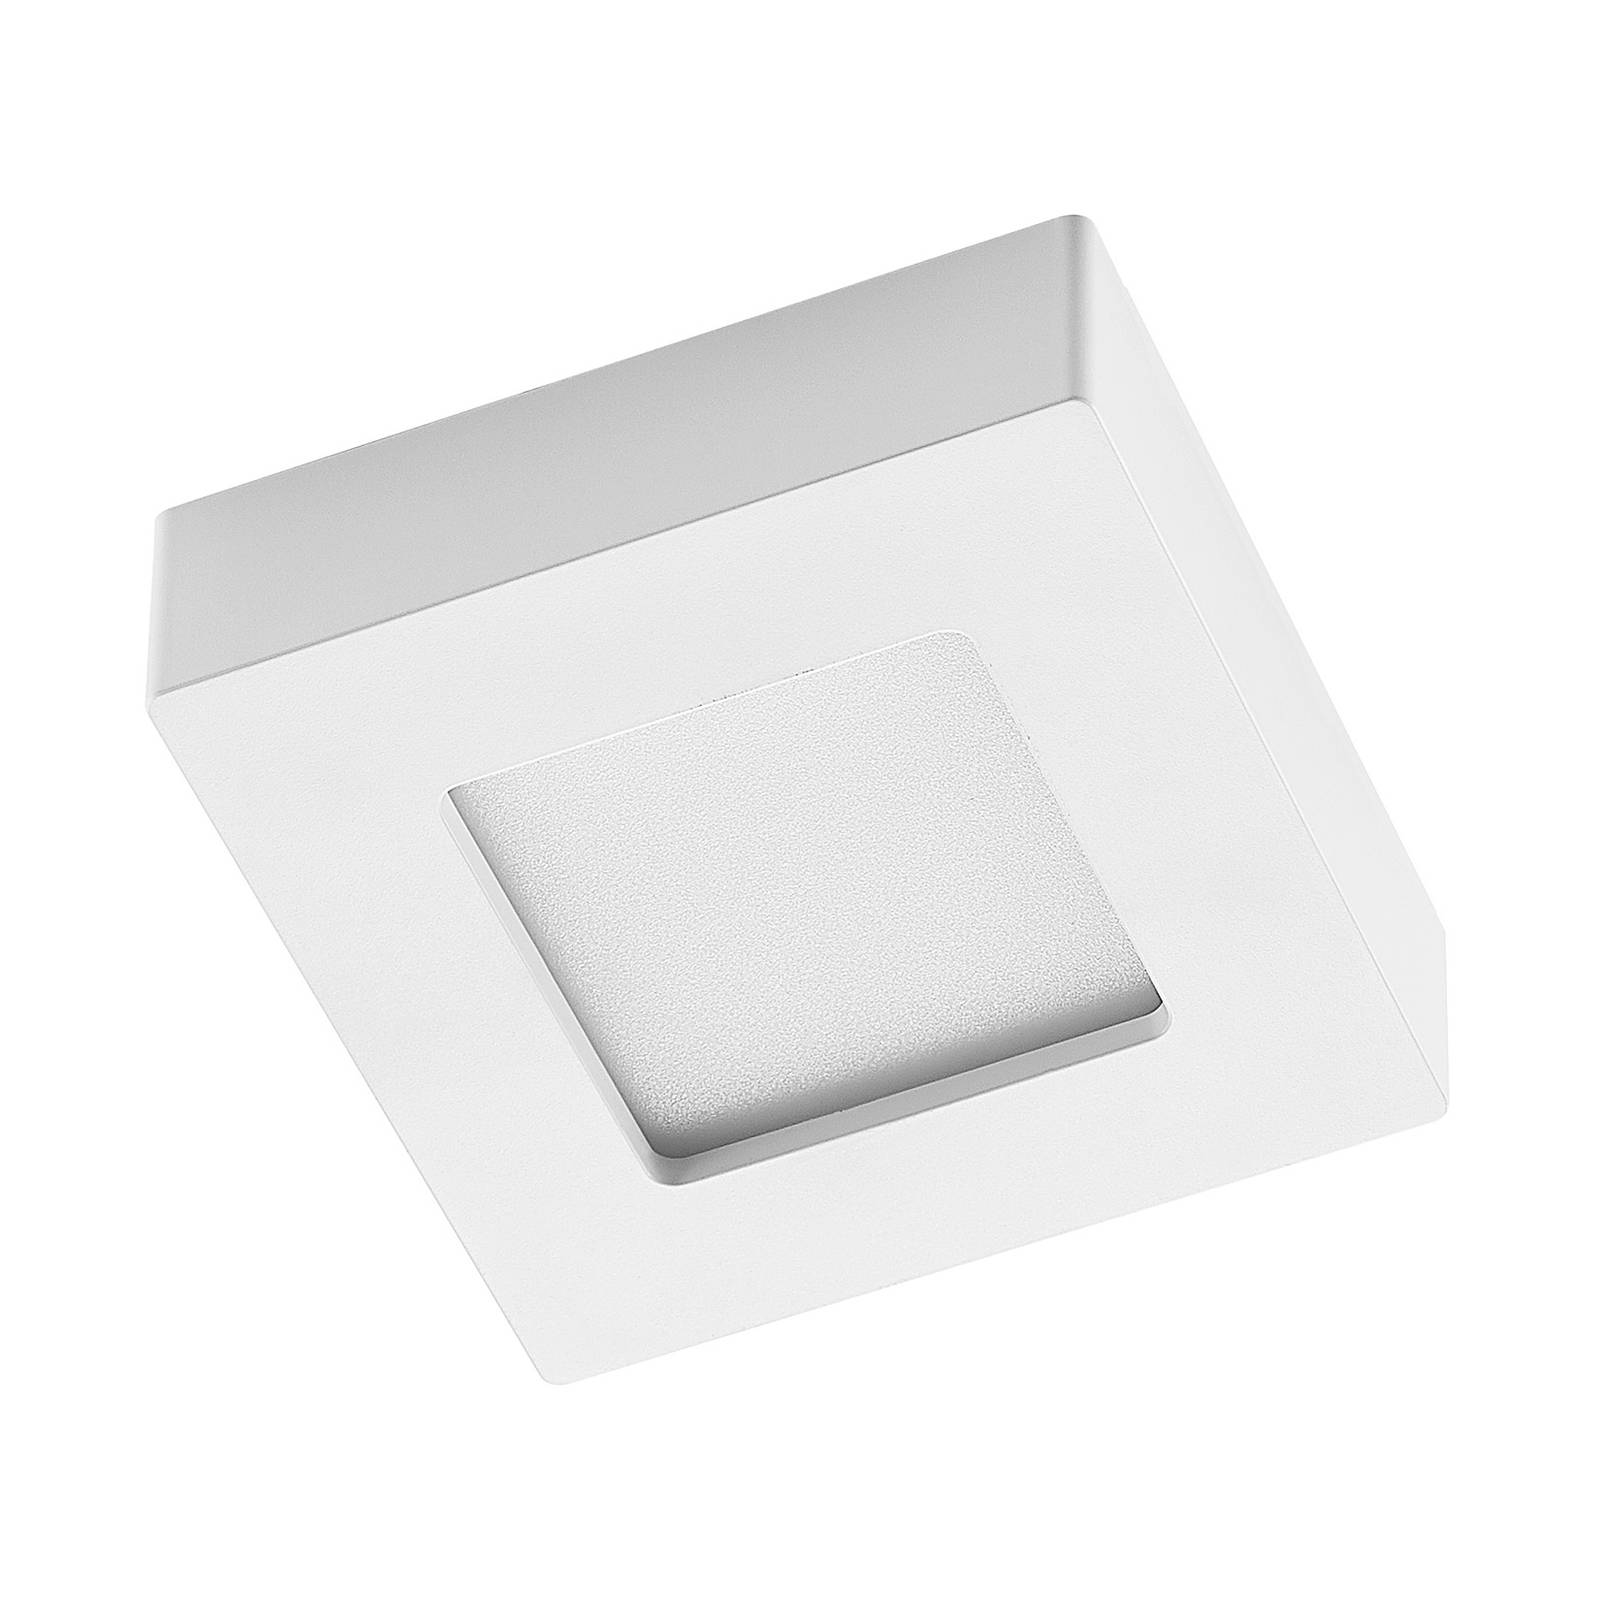 Prios Alette LED-Deckenleuchte, weiß, 12,2 cm